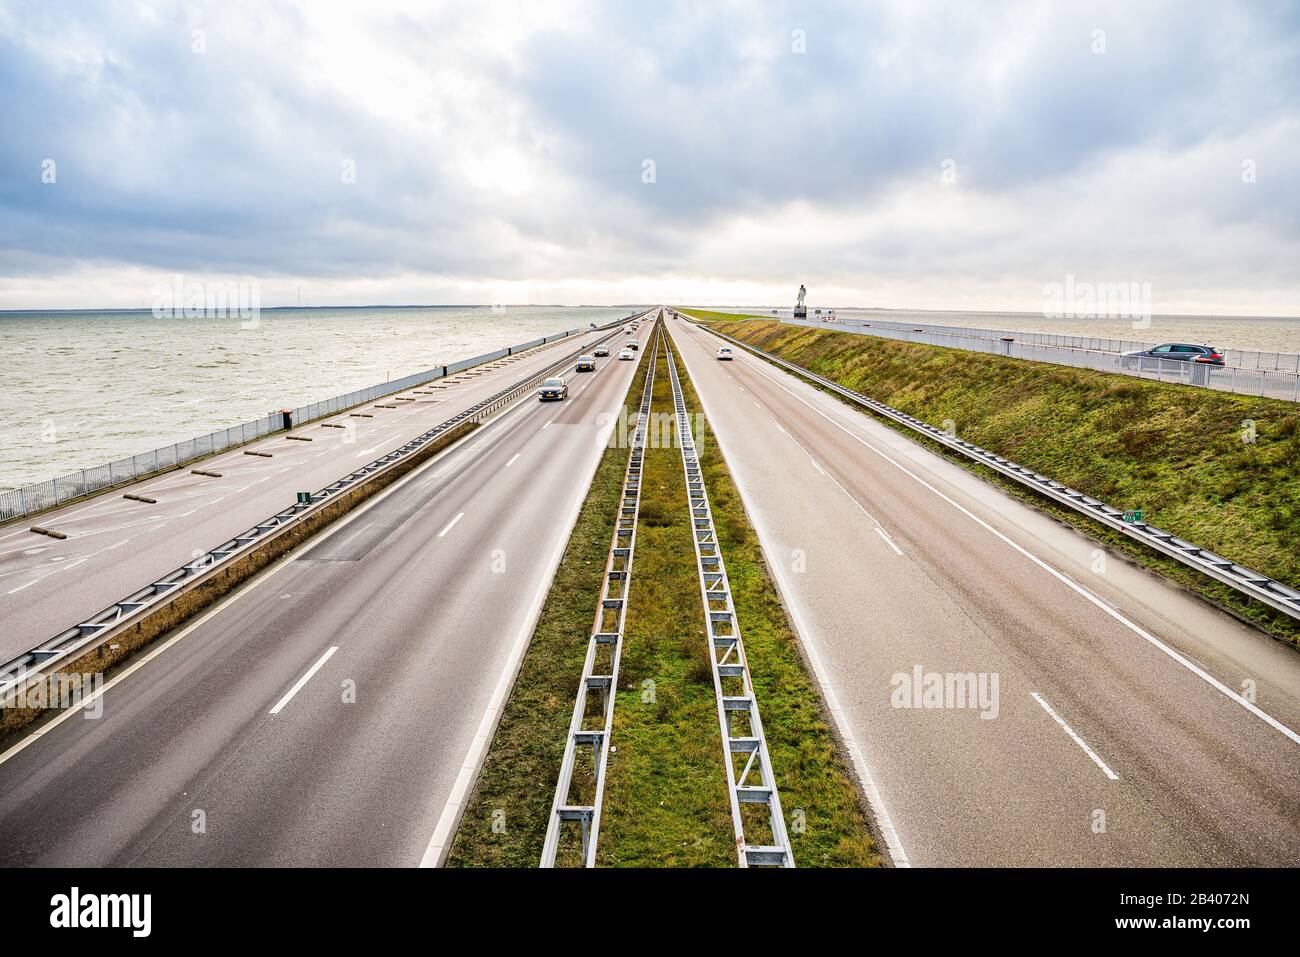 Den Oever, Pays-Bas - 9 Janvier 2020. Autoroute entre deux points de vue au  nord des Pays-Bas en divisant IJsselmeer et Waddeneilanden (Islan frisonne  Photo Stock - Alamy